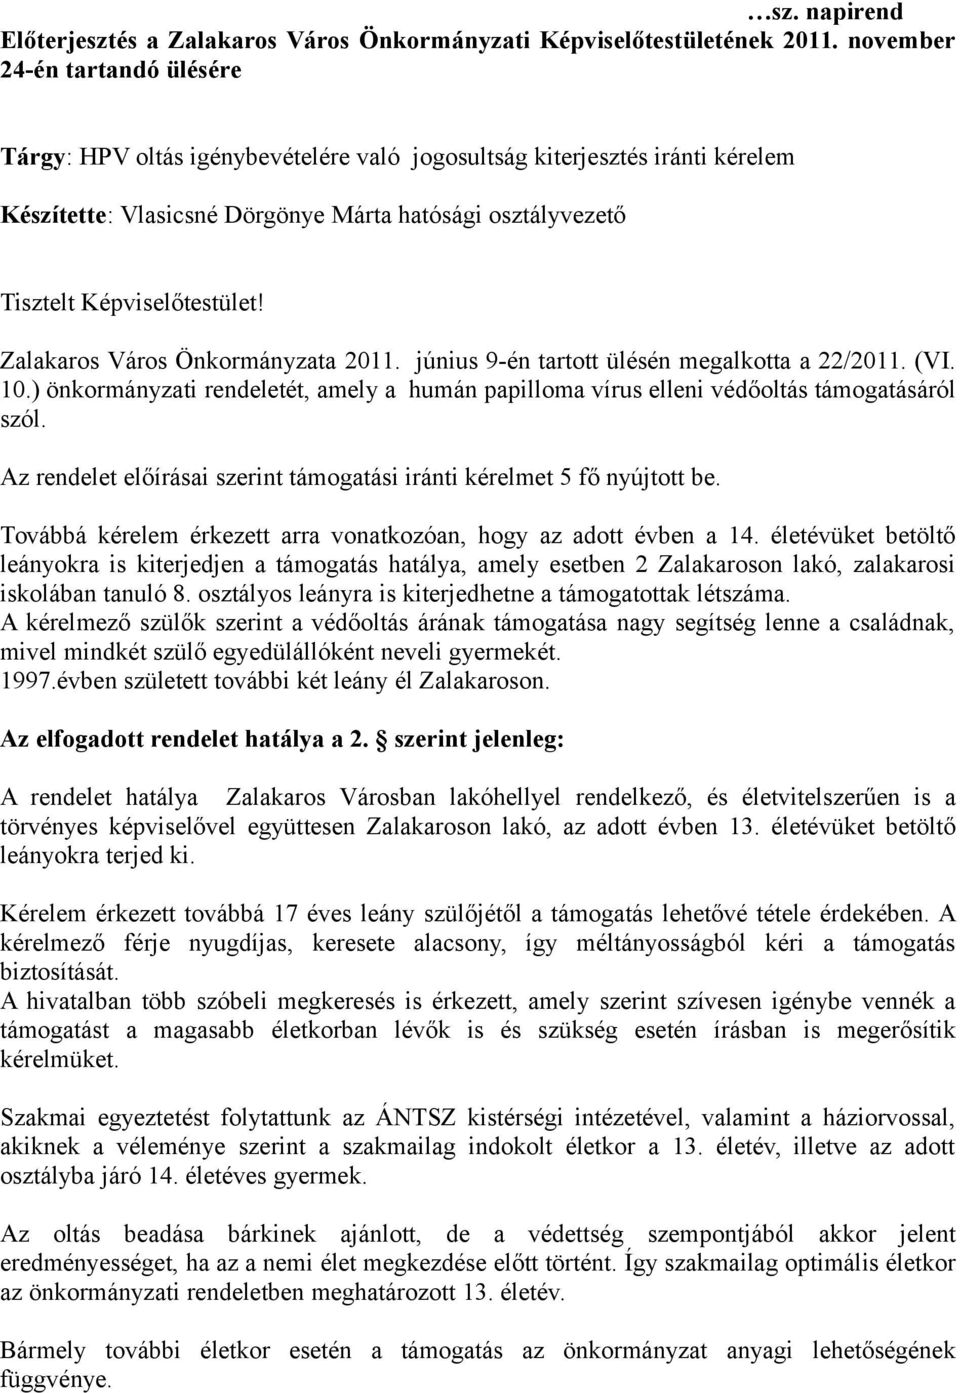 Zalakaros Város Önkormányzata 2011. június 9-én tartott ülésén megalkotta a 22/2011. (VI. 10.) önkormányzati rendeletét, amely a humán papilloma vírus elleni védőoltás támogatásáról szól.